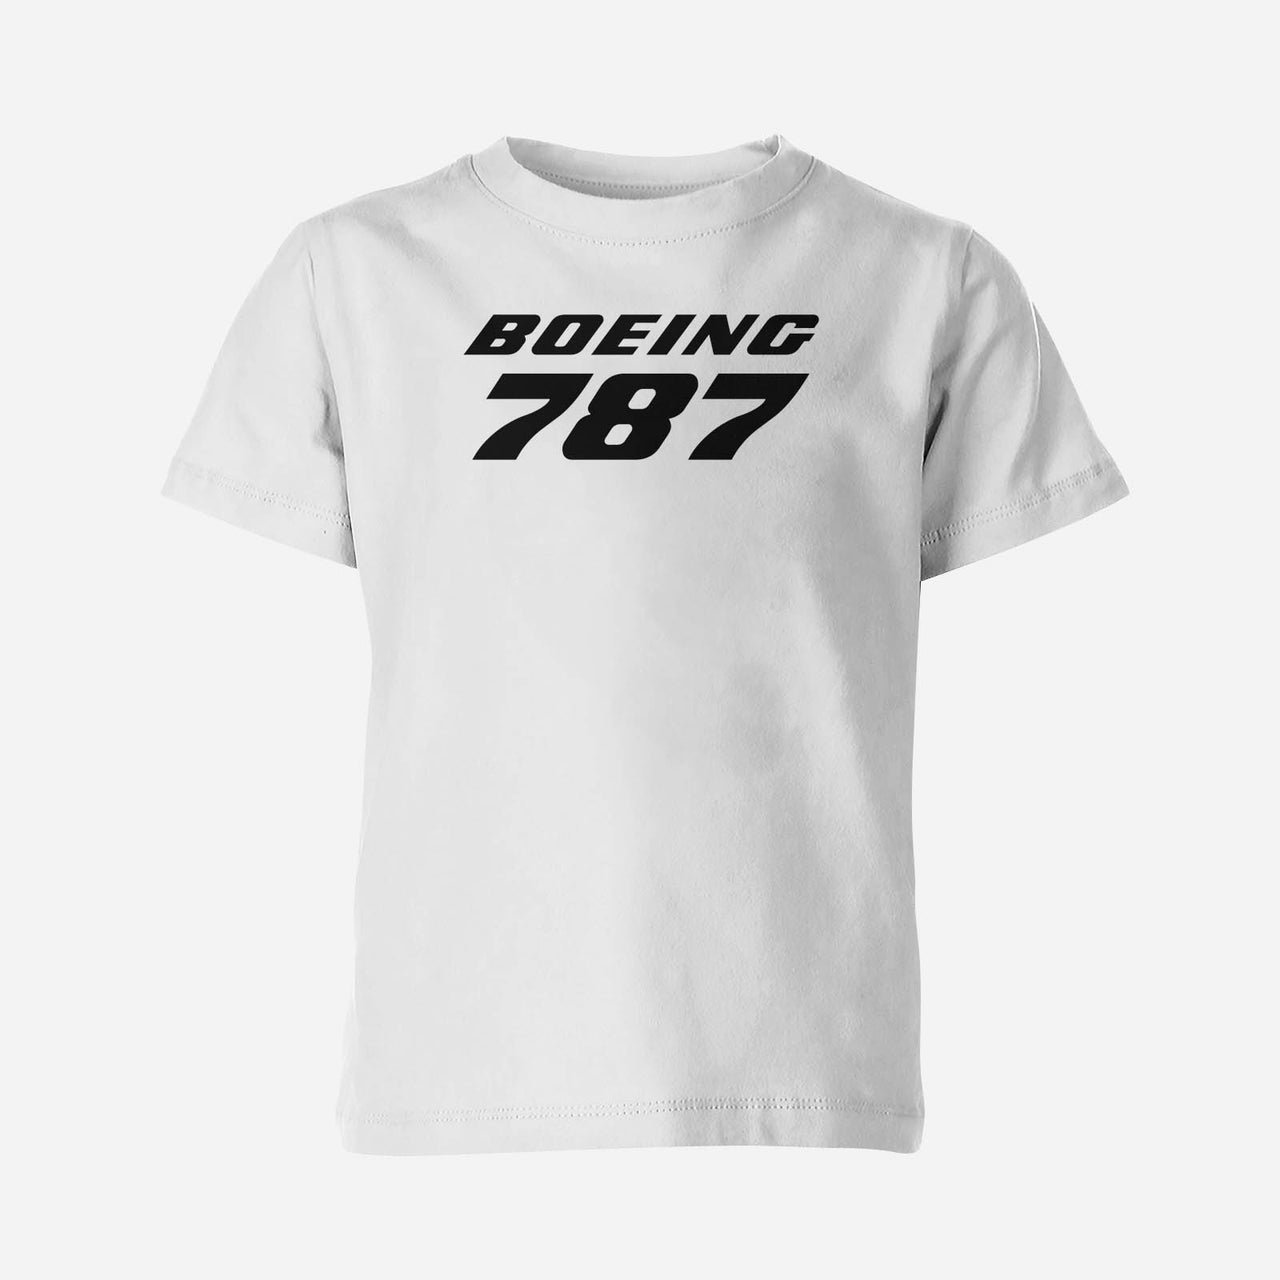 Boeing 787 & Text Designed Children T-Shirts